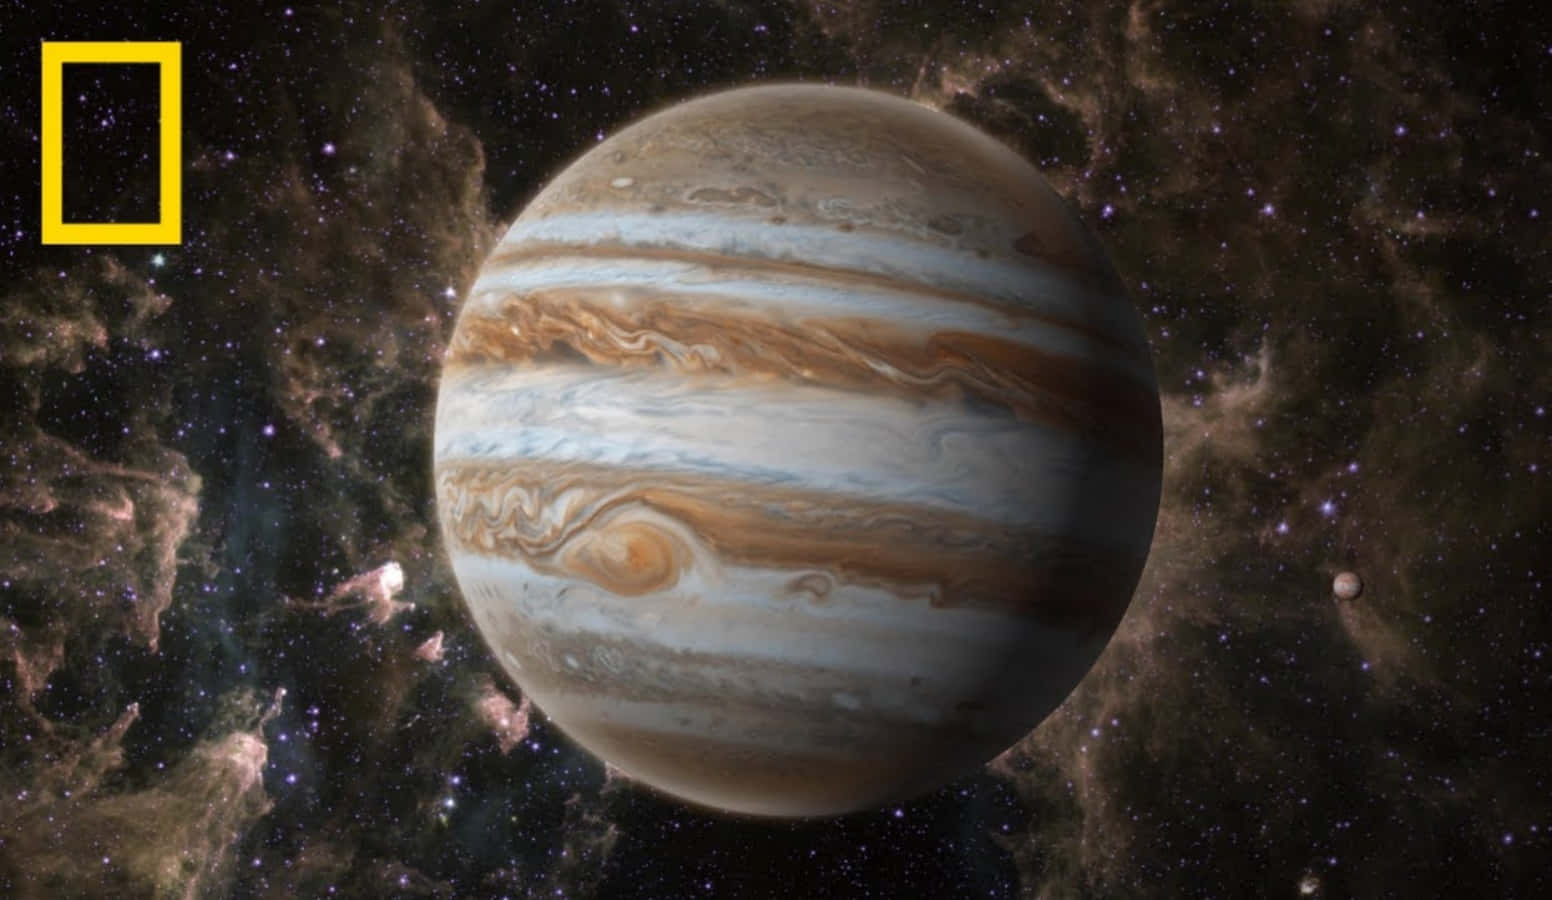 Massive gas giant Jupiter seen in vivid color